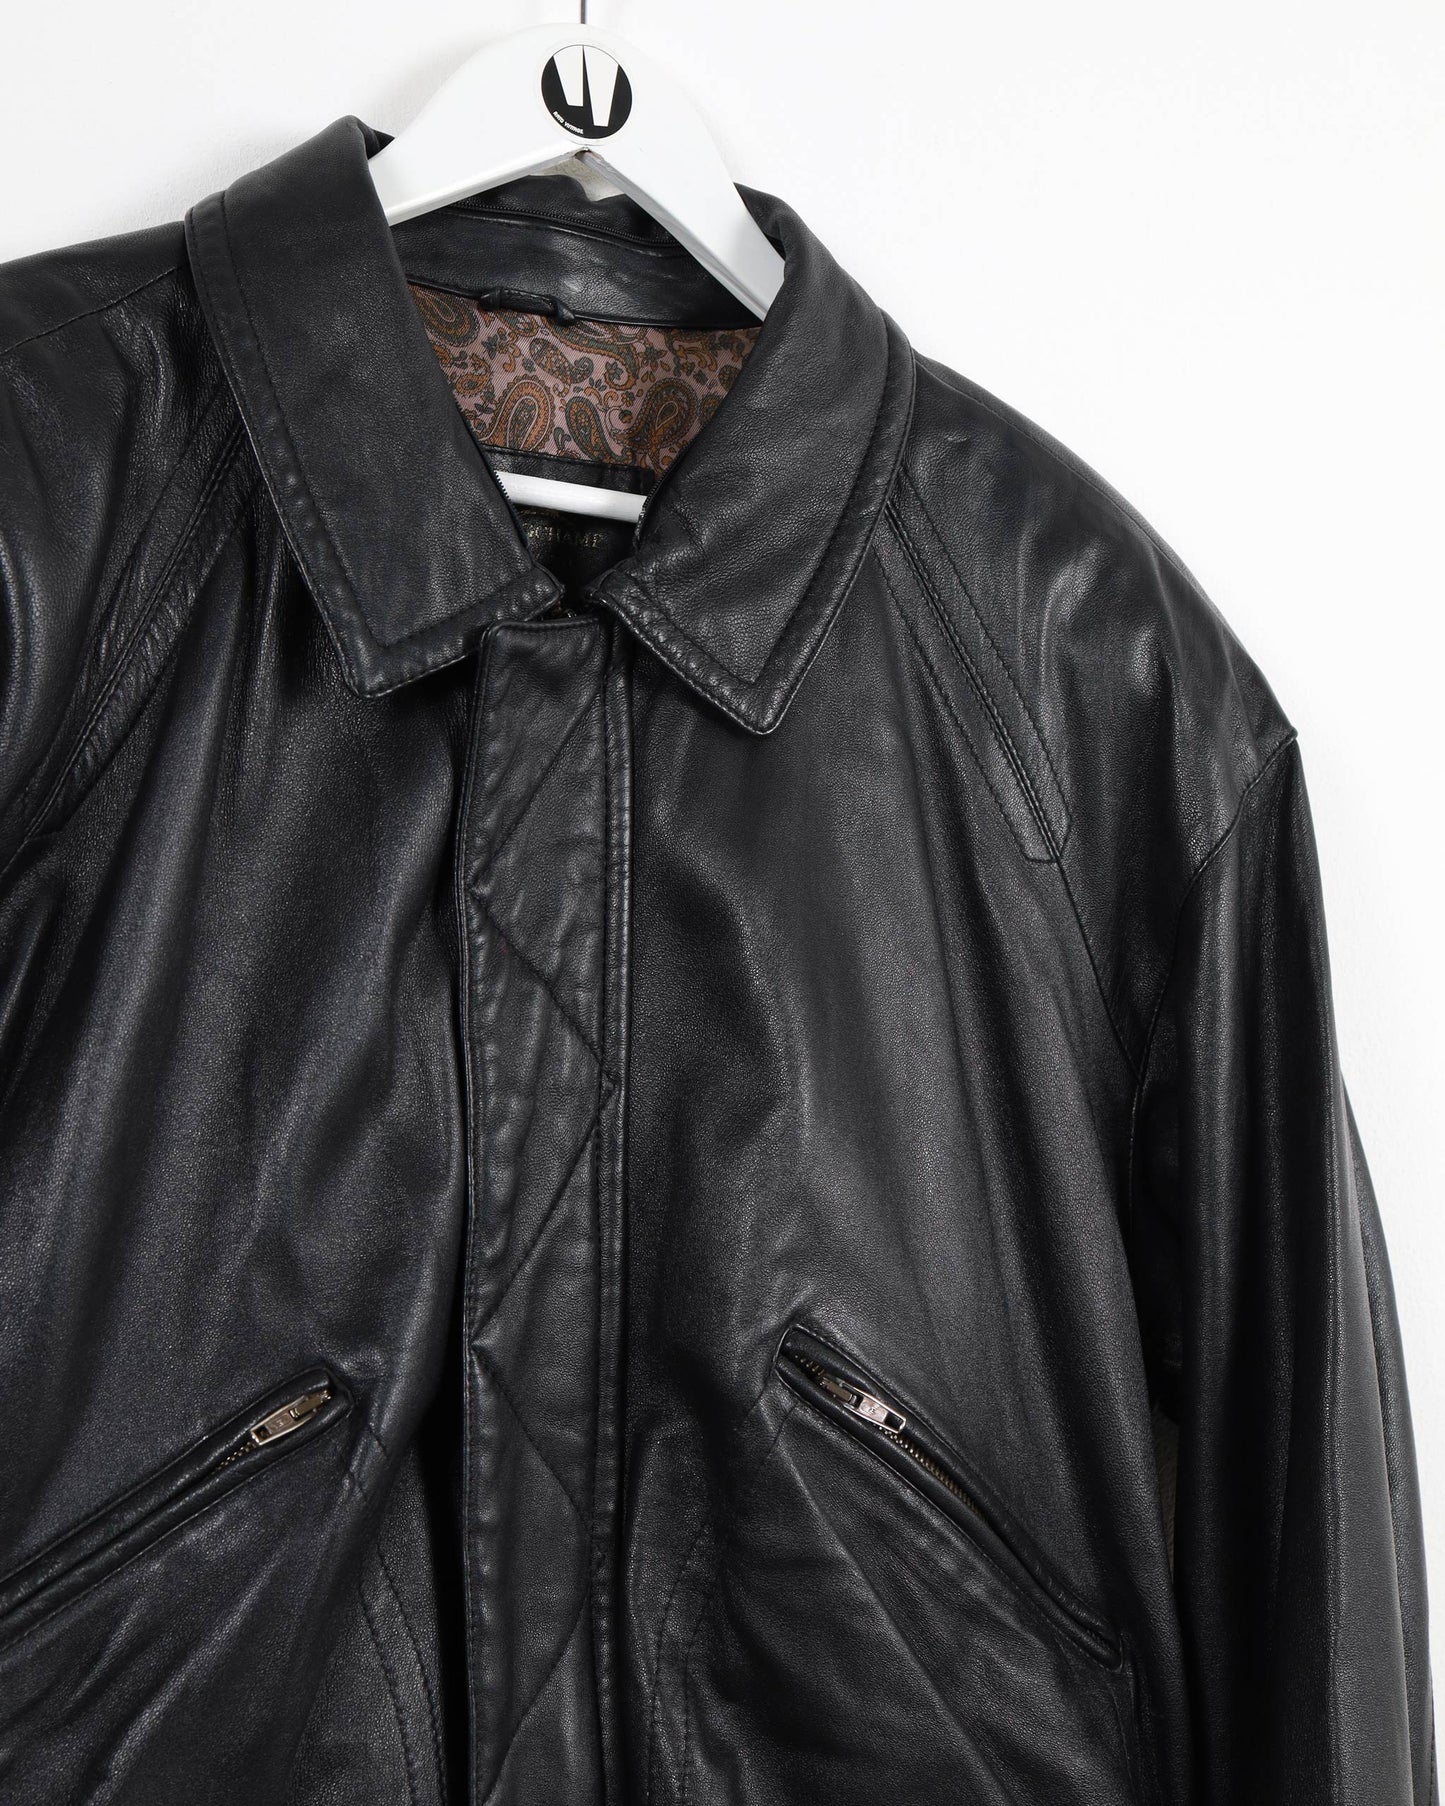 Longchamp Bomber Leather Jacket Black